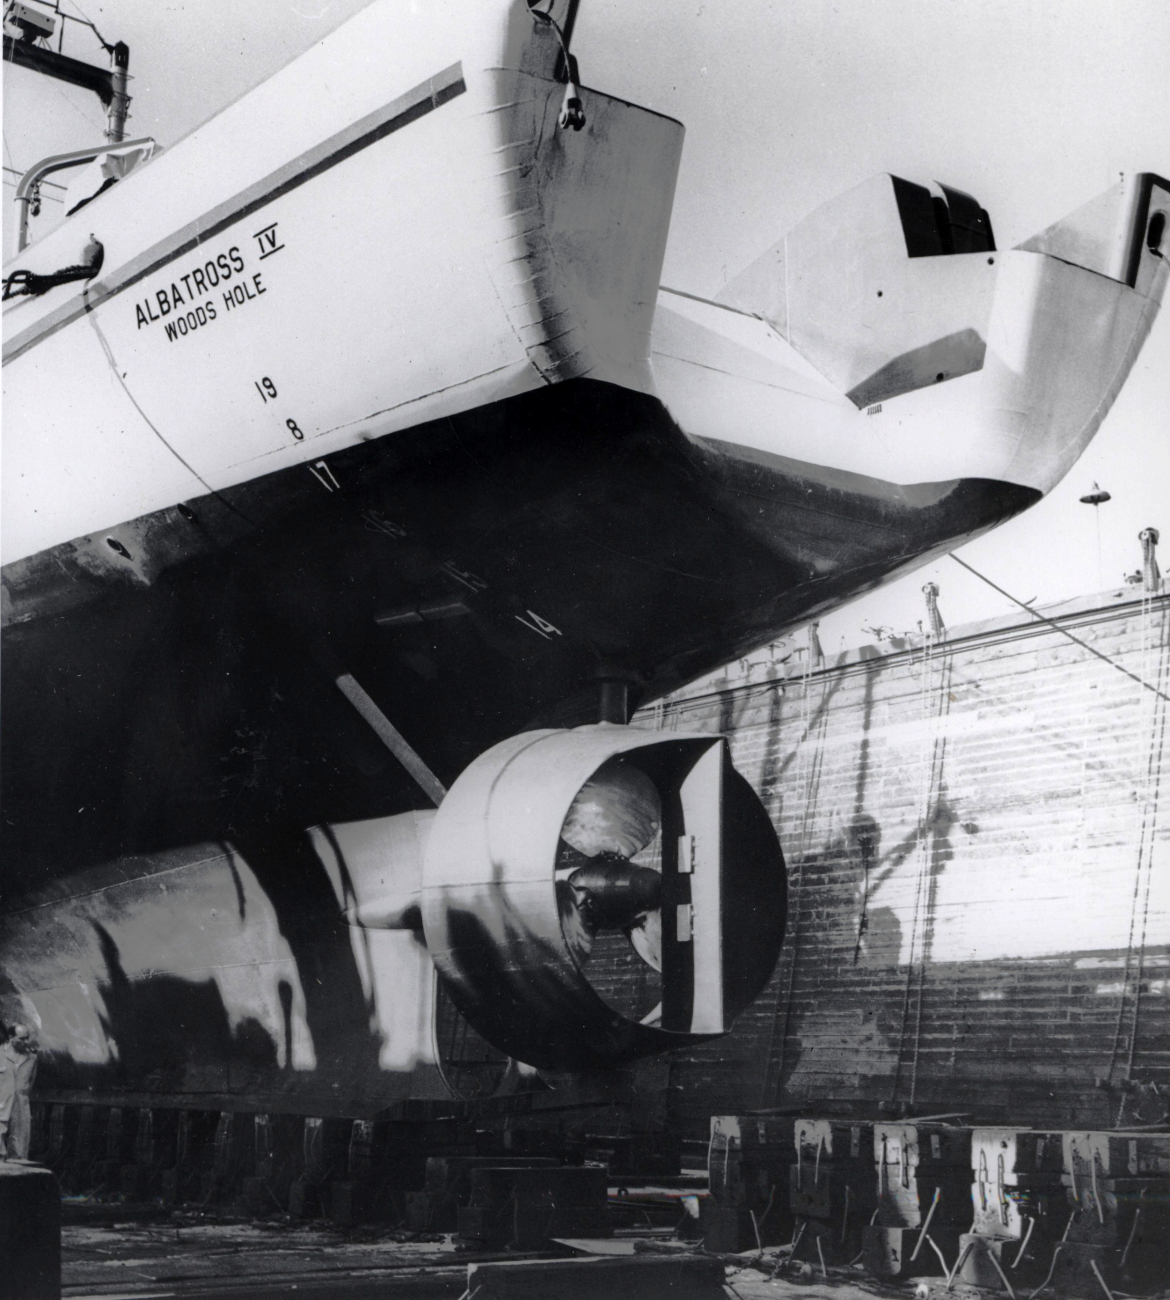 Propeller of ALBATROSS IV seen during a shipyard period